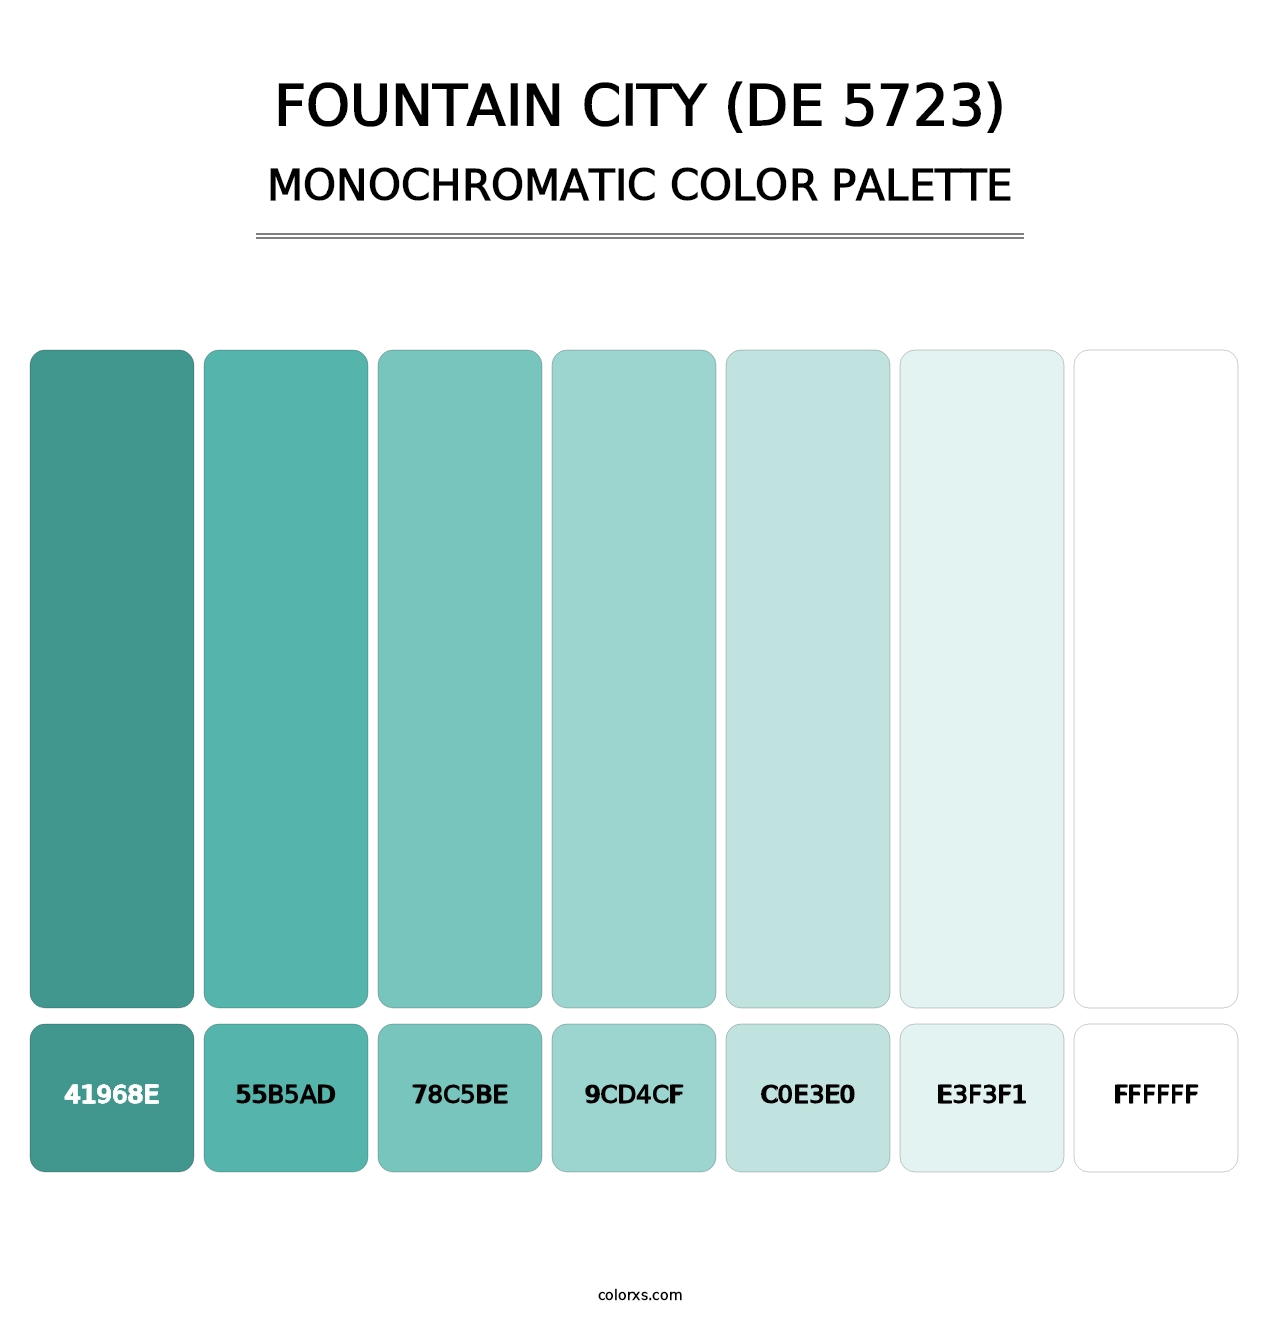 Fountain City (DE 5723) - Monochromatic Color Palette